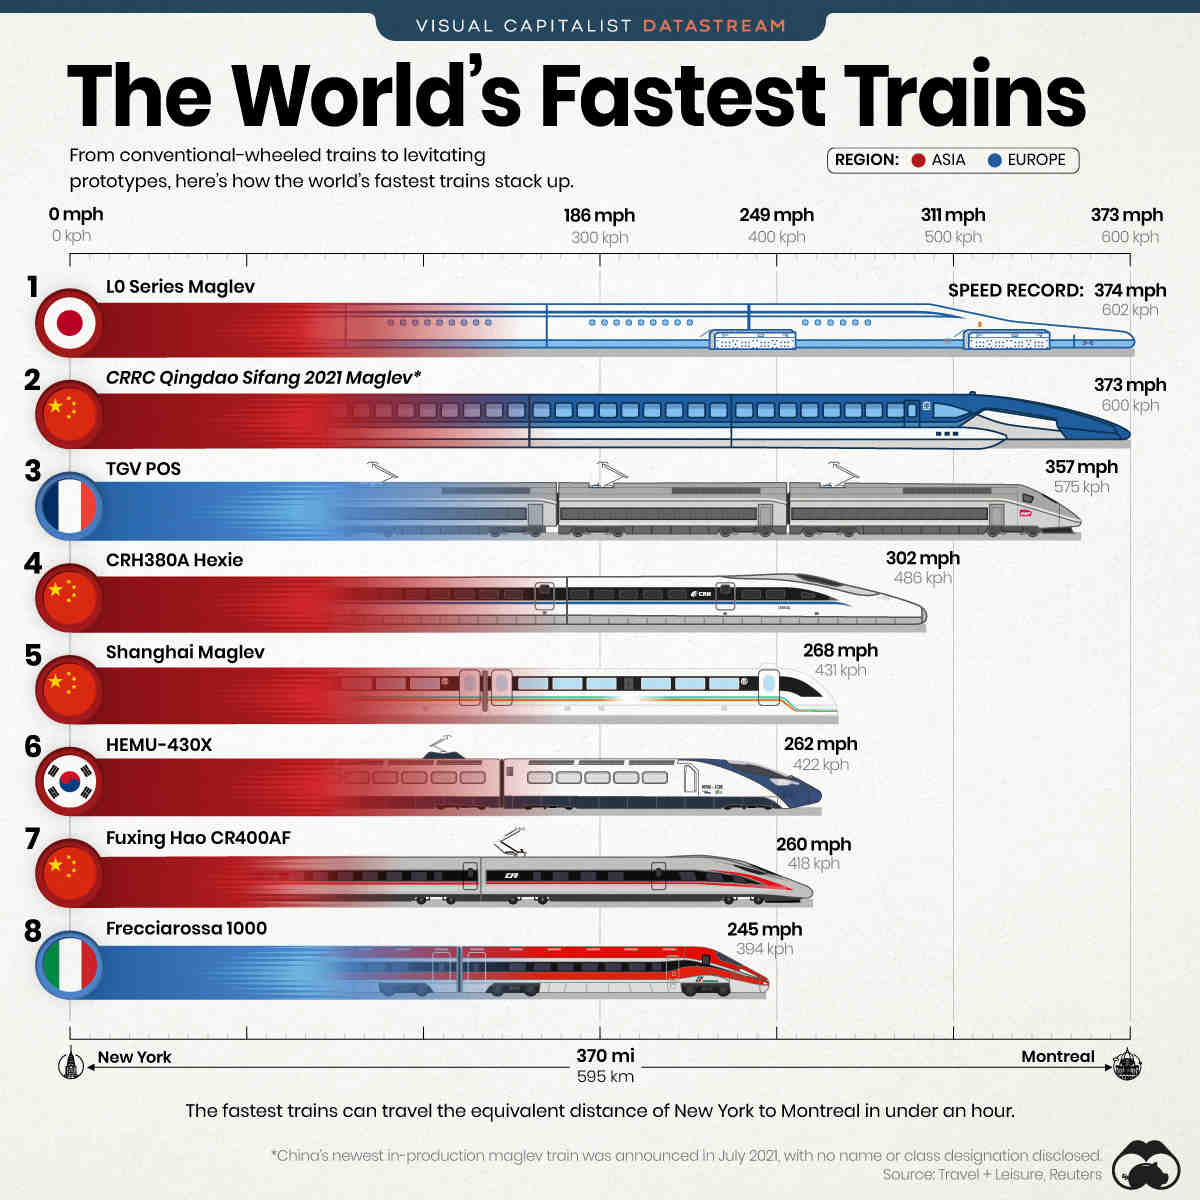 Quels sont les 5 trains les plus rapides du monde ?